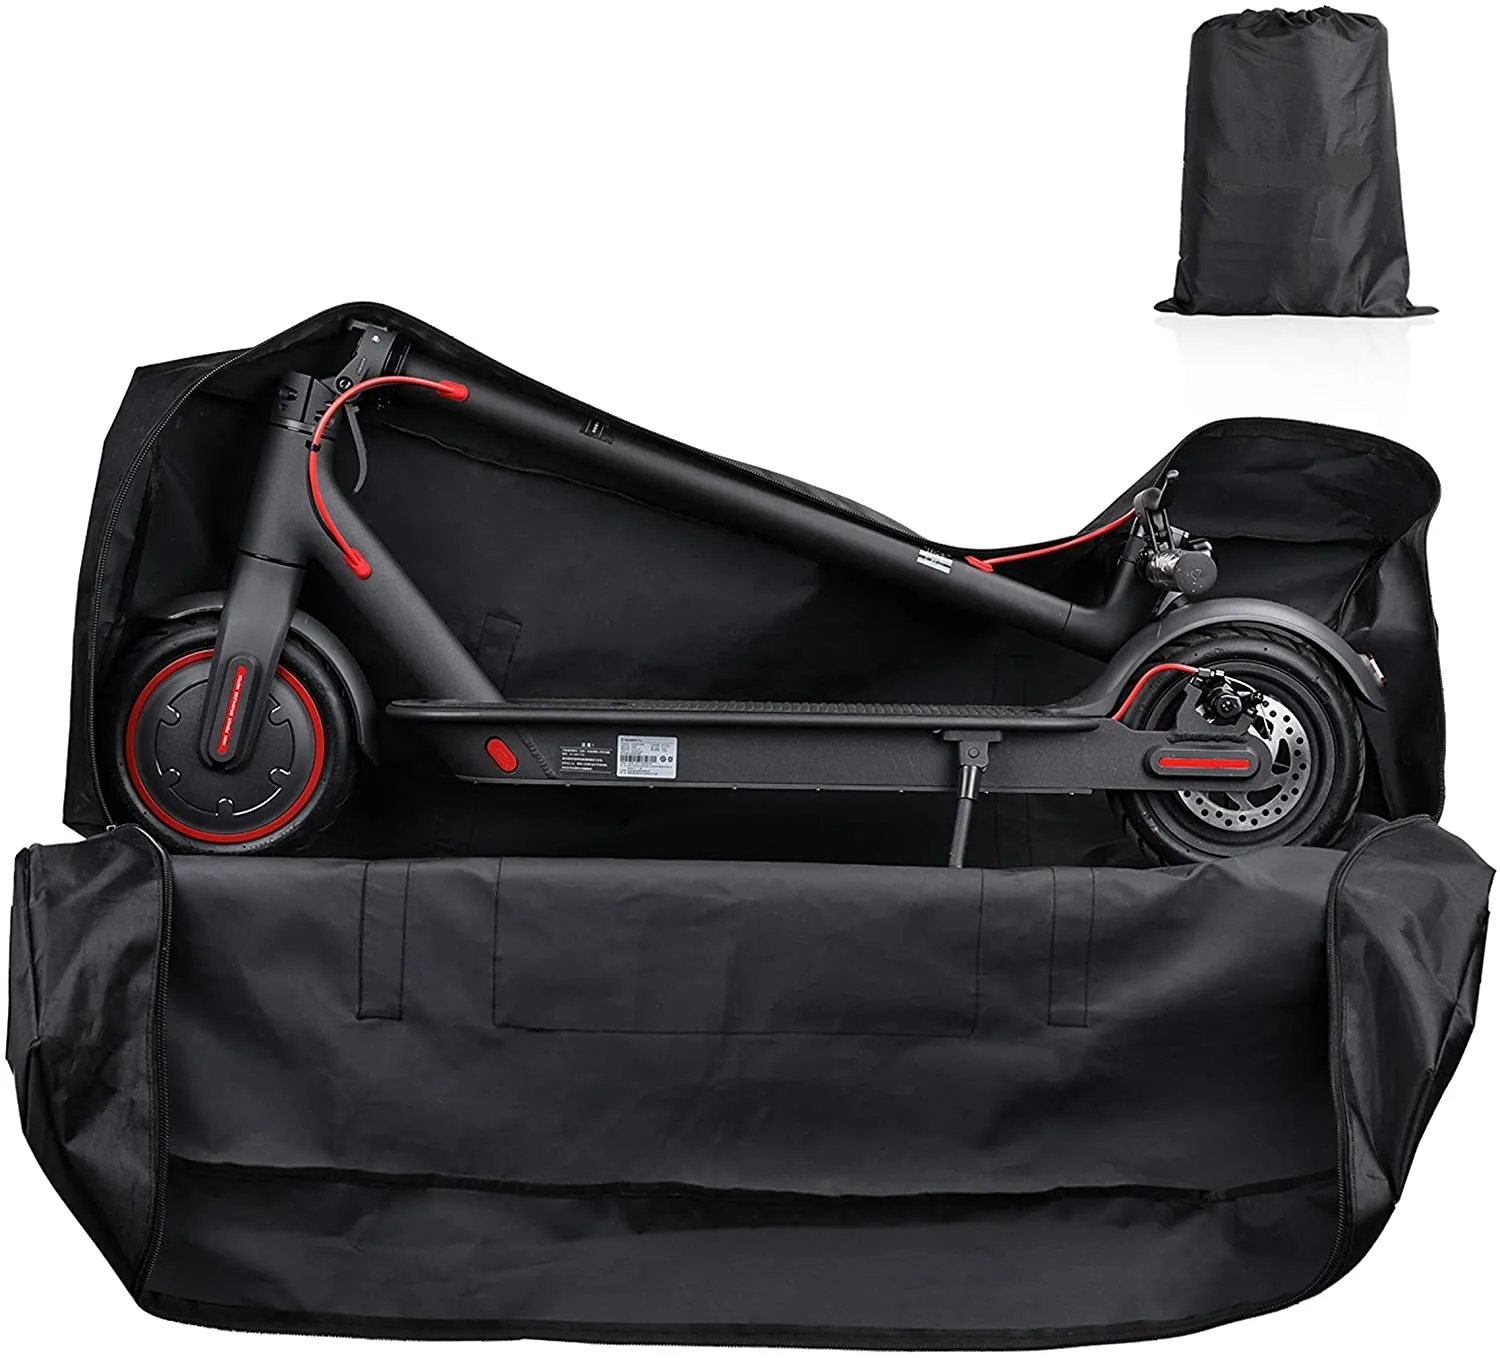 Foldable स्कूटर इलेक्ट्रिक स्कूटर बैग ले जाने